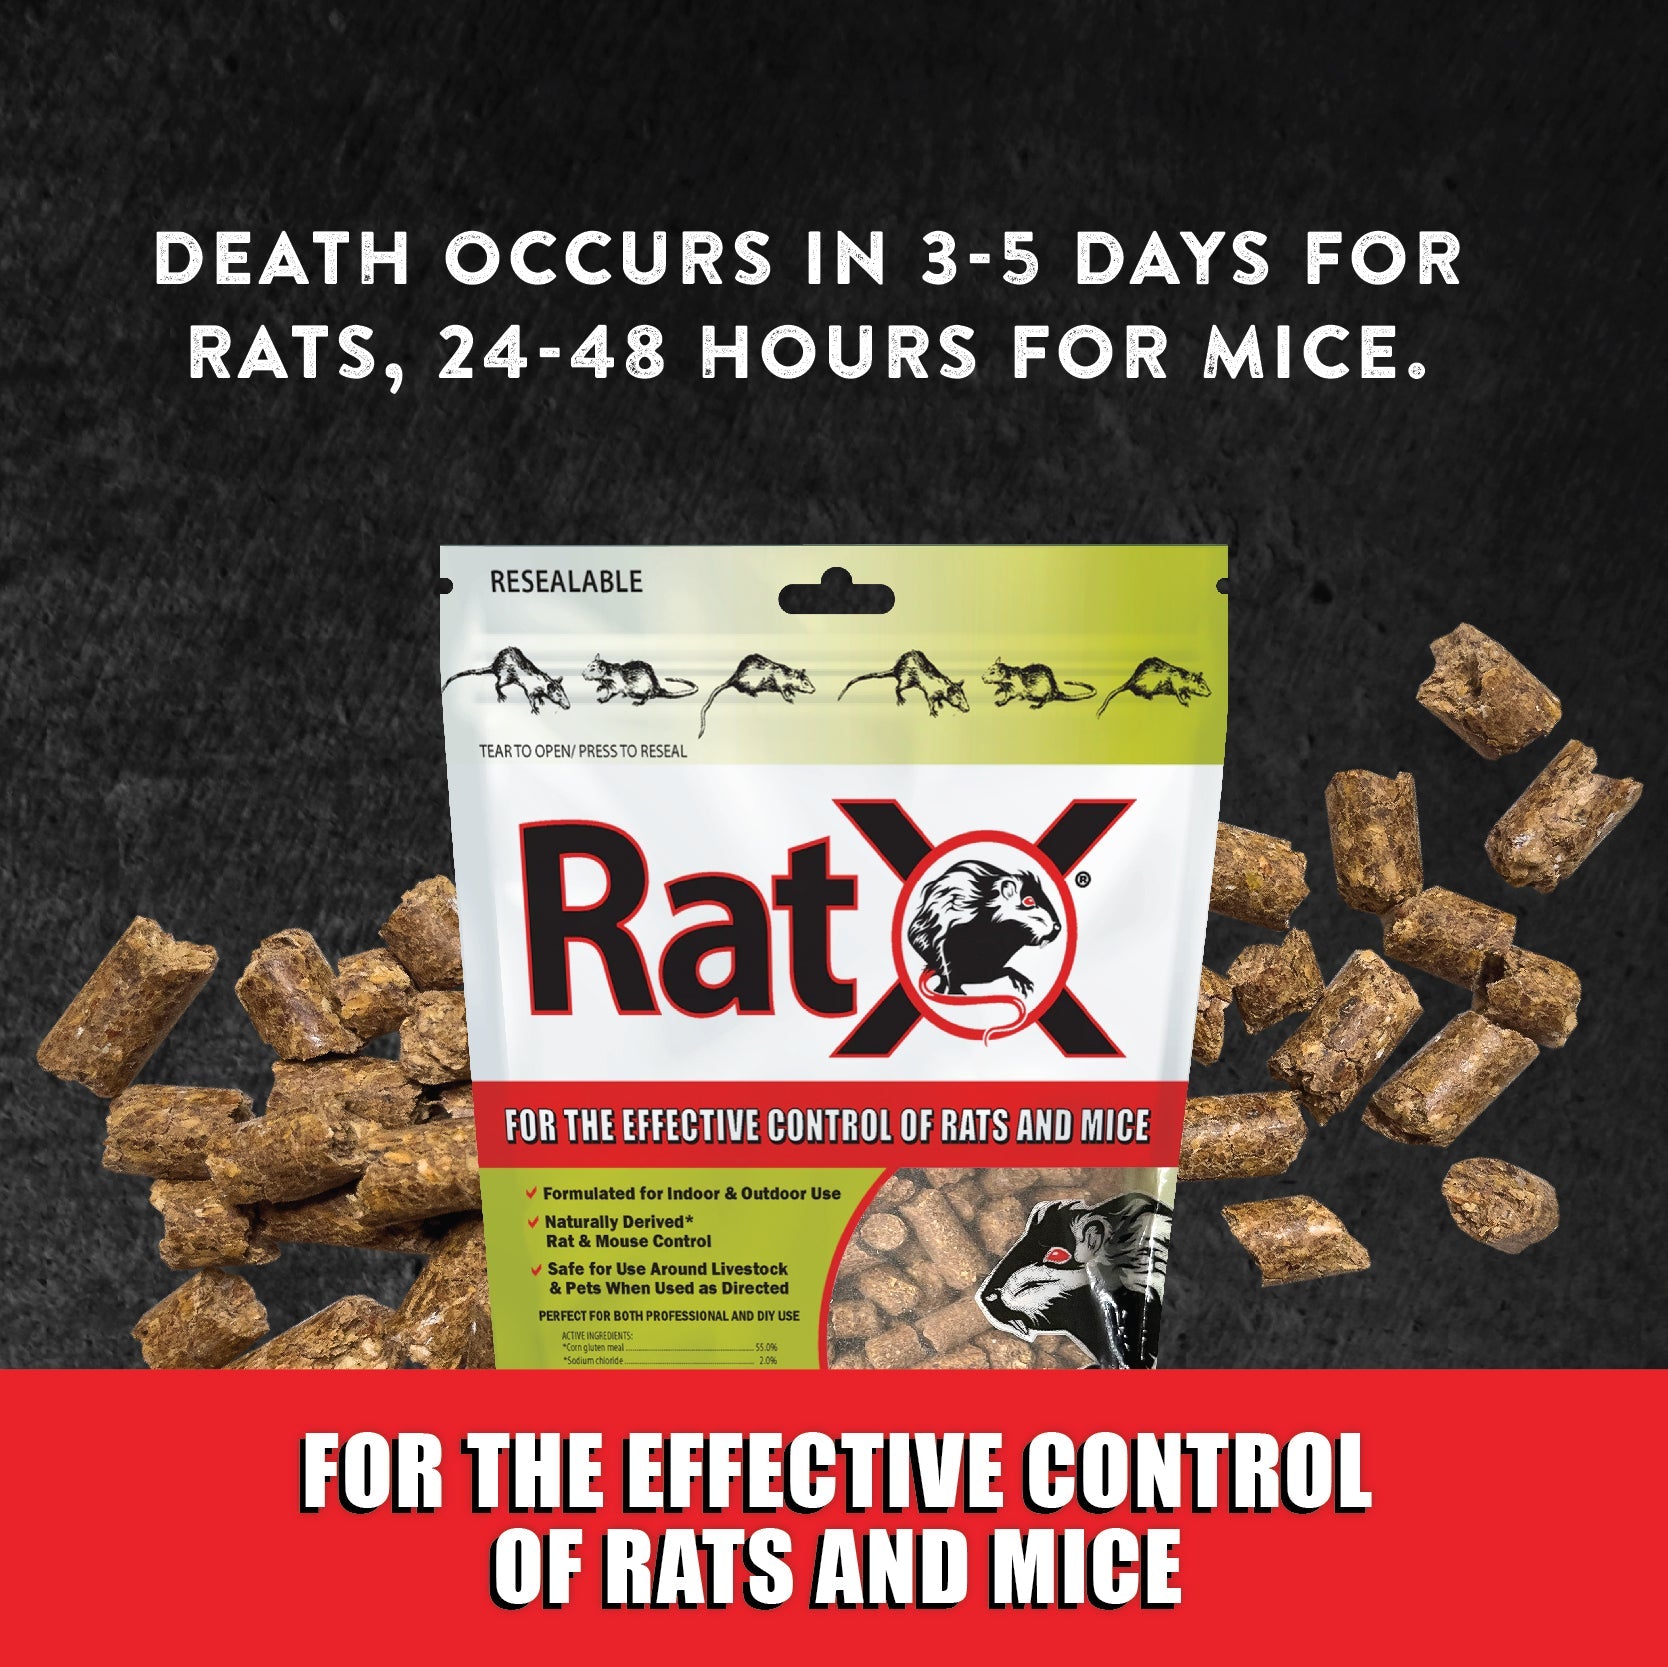 Poison pour rats Massó Roe-Pellet